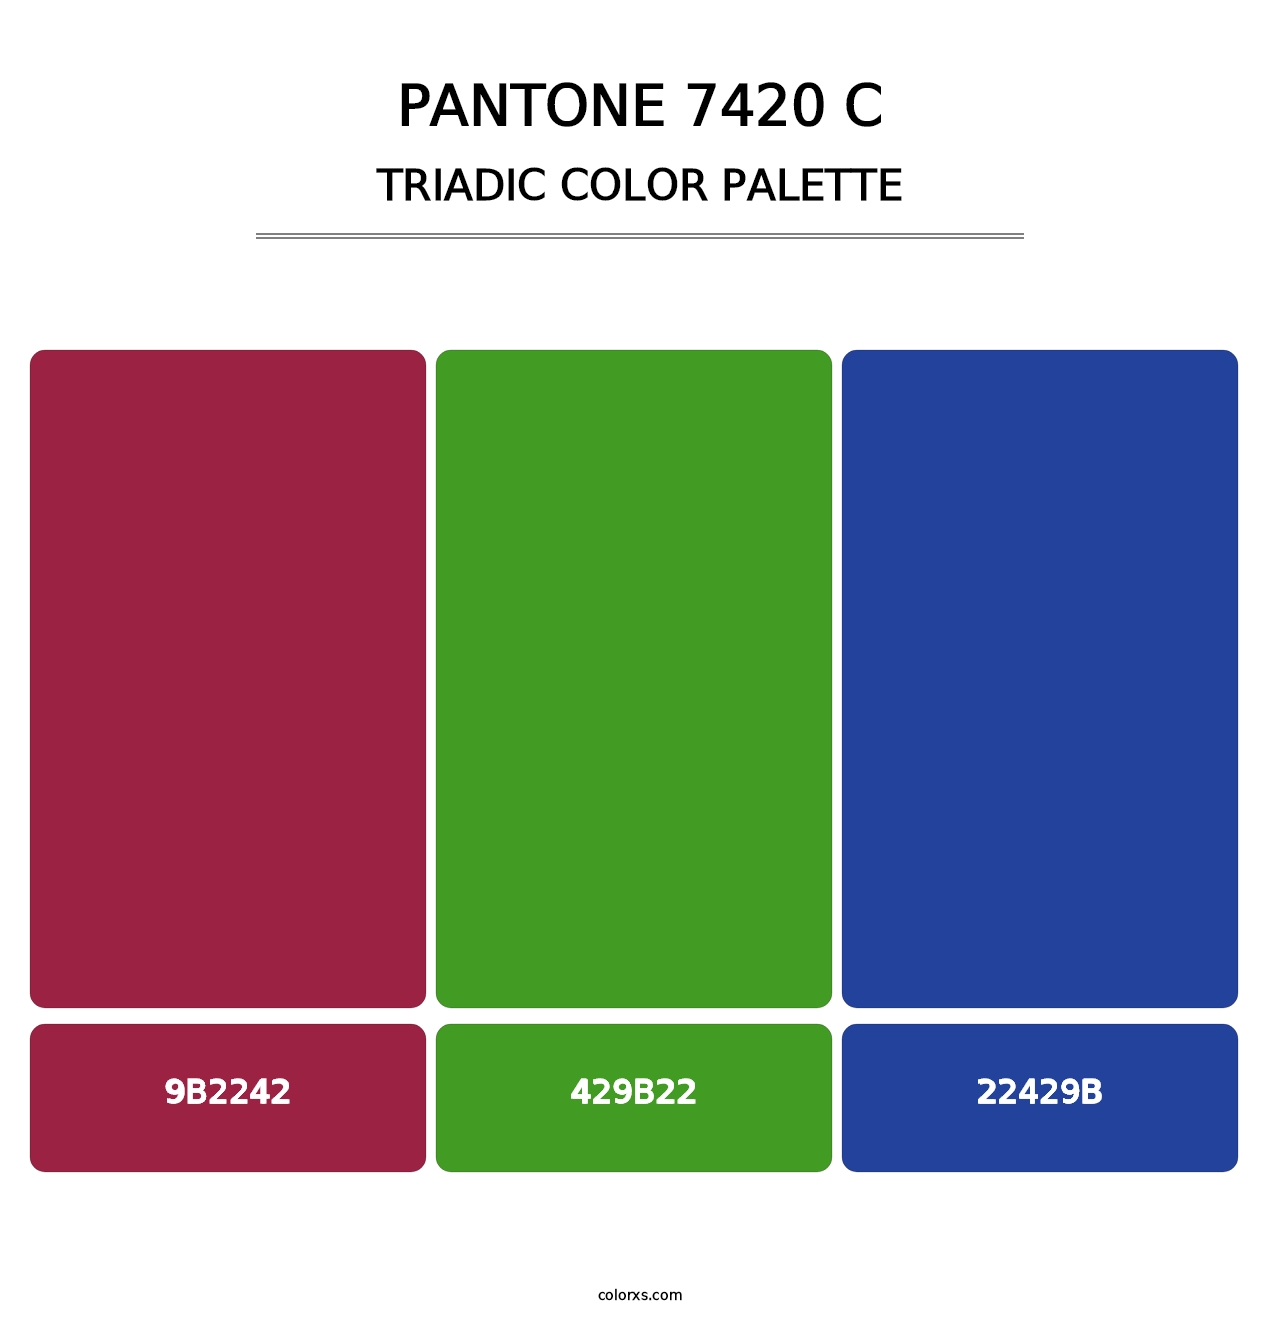 PANTONE 7420 C - Triadic Color Palette